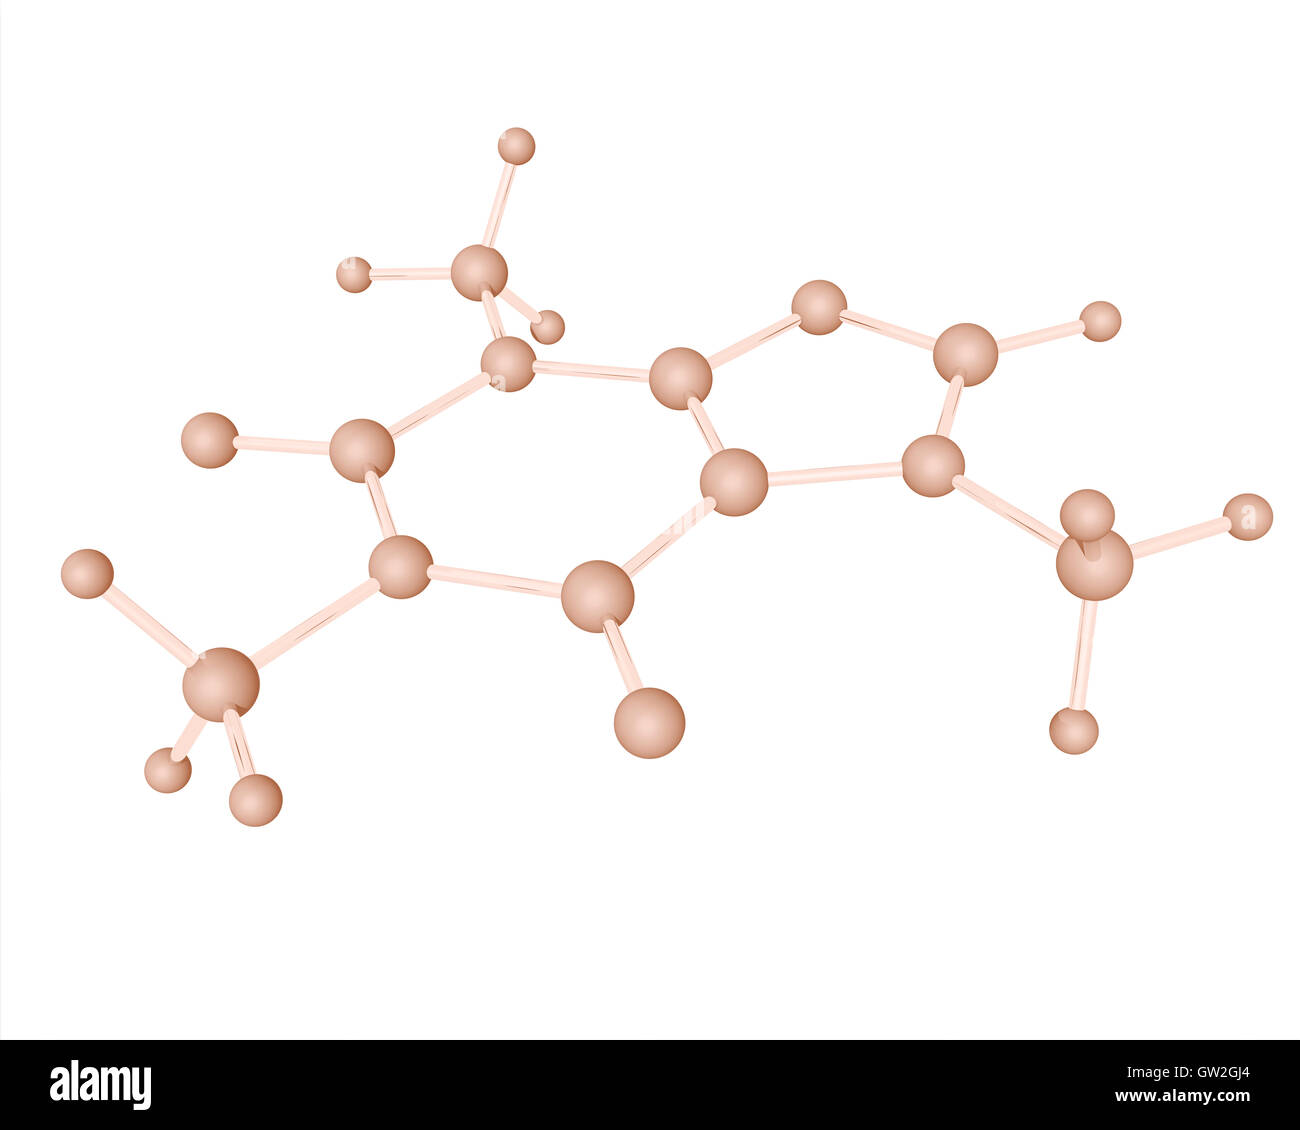 Molekulare 3D-Modell des Koffein-ein zentrales Nervensystem (ZNS) Stimulans Methylxanthin-Klasse. Stockfoto